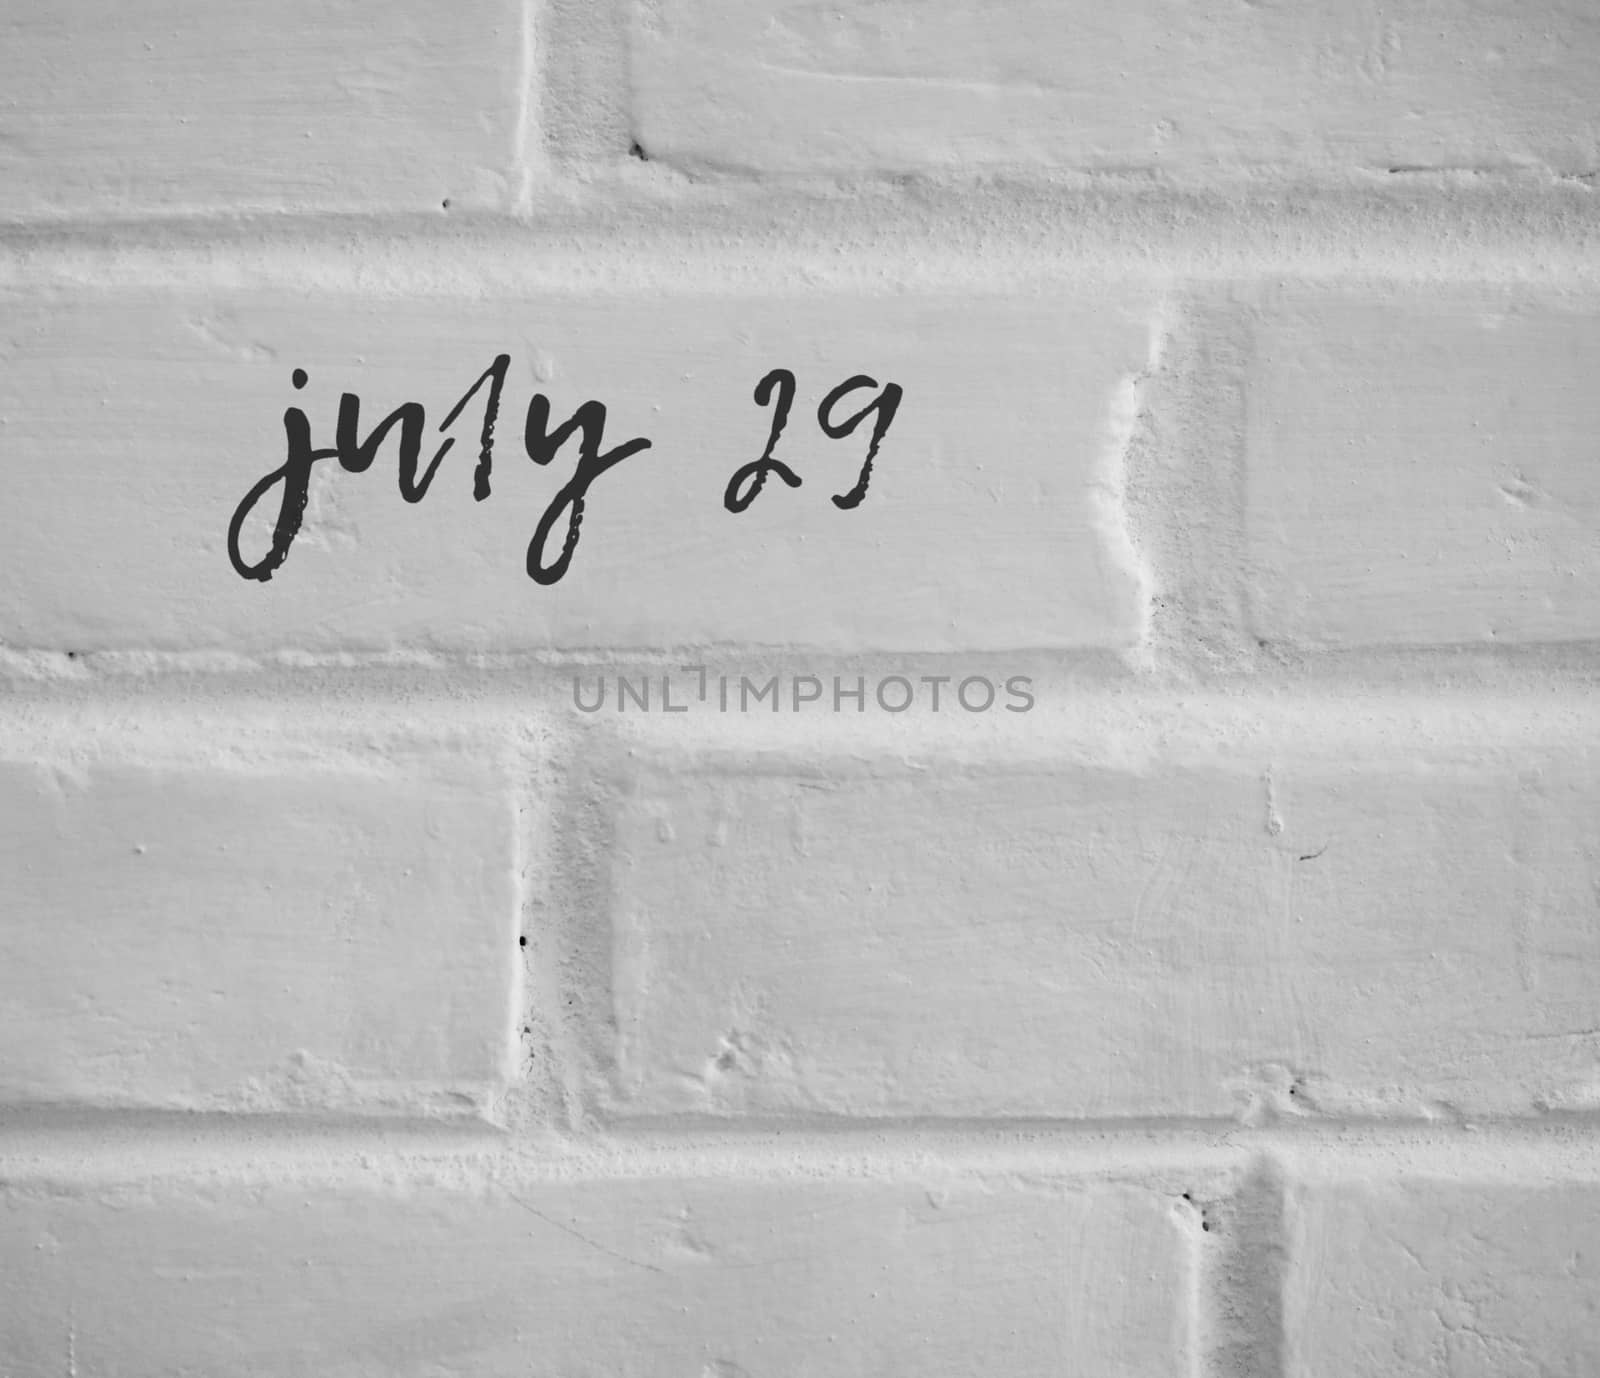 PHOTO OF july 29 WRITTEN ON WHITE PLAIN BRICK WALL